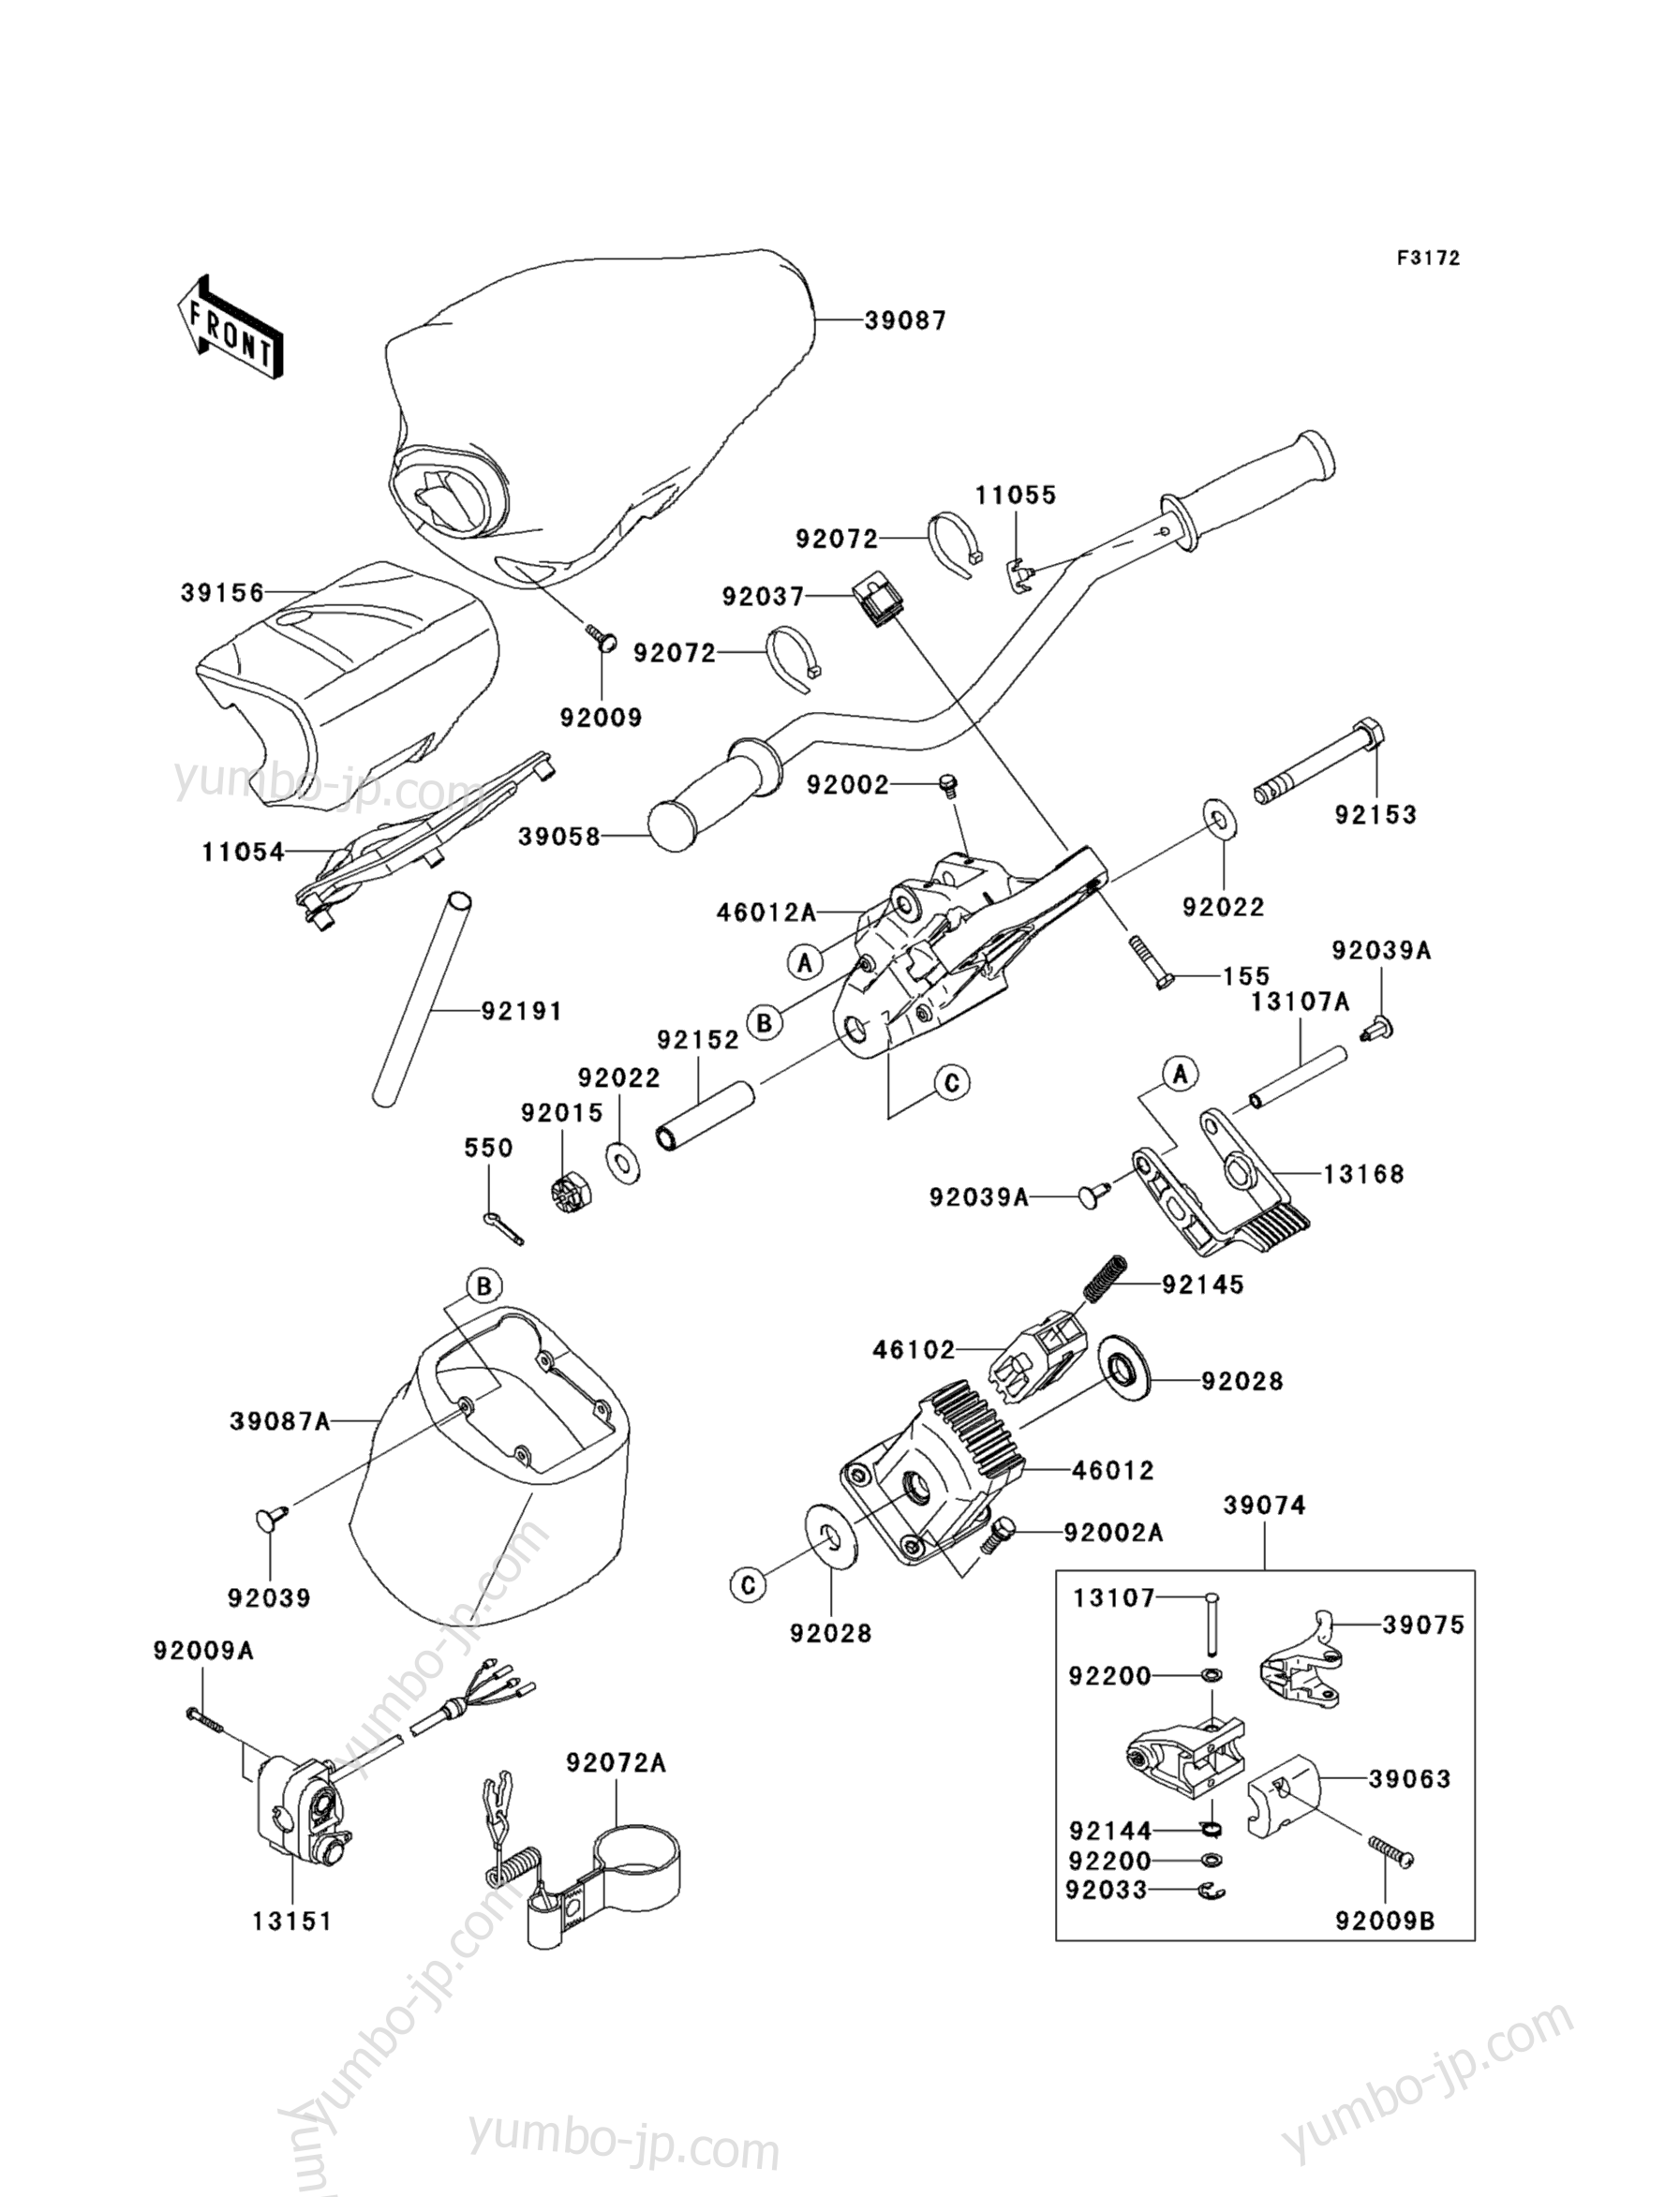 Румпель (рукоятка управления) для гидроциклов KAWASAKI JET SKI ULTRA LX (JT1500C7F) 2007 г.